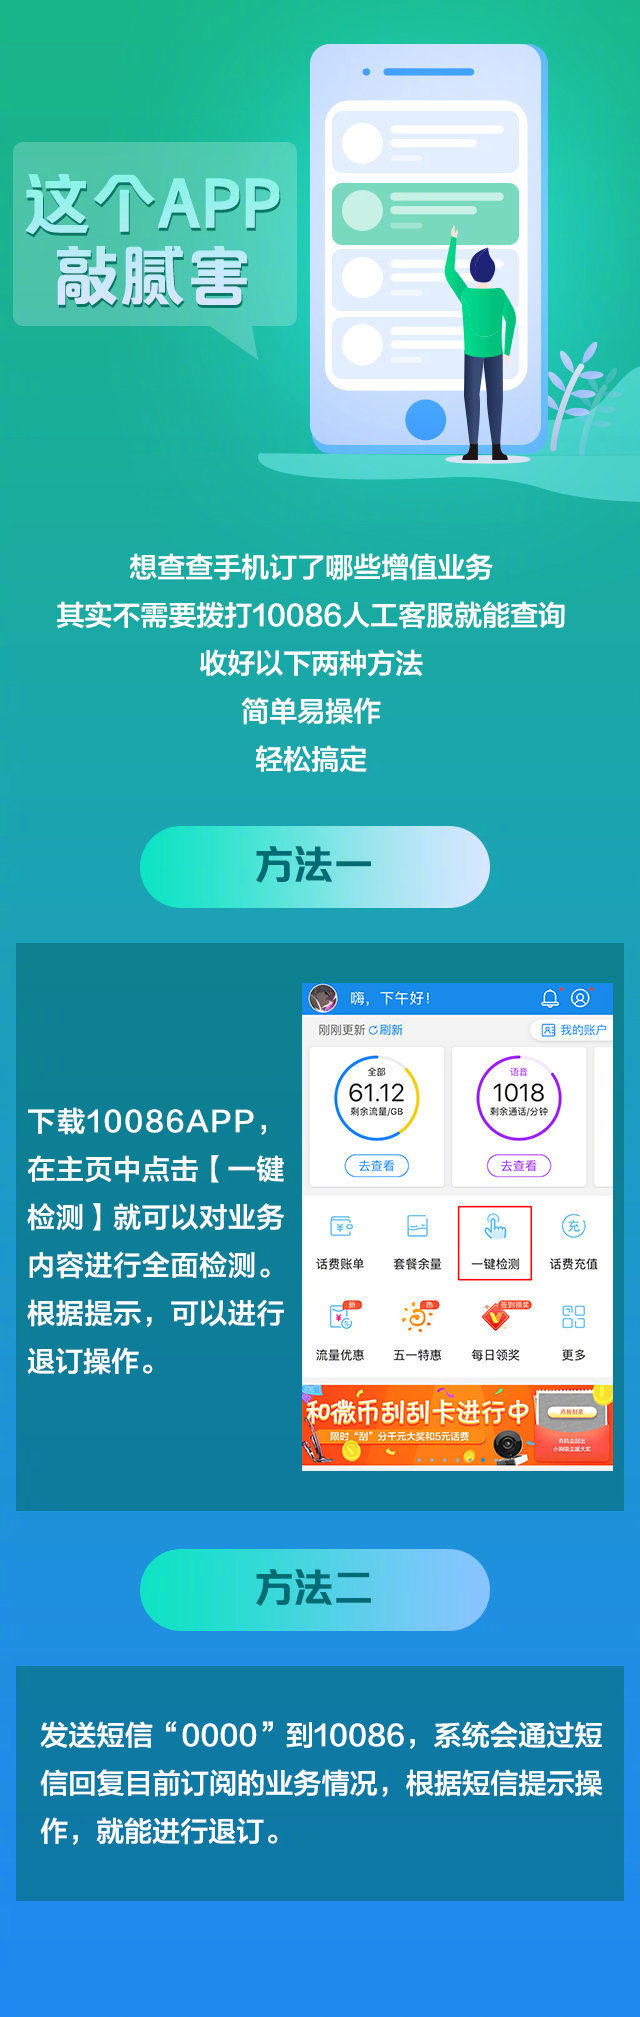 动态手机壁纸，中国移动公布一键查询和退订增值营业方式